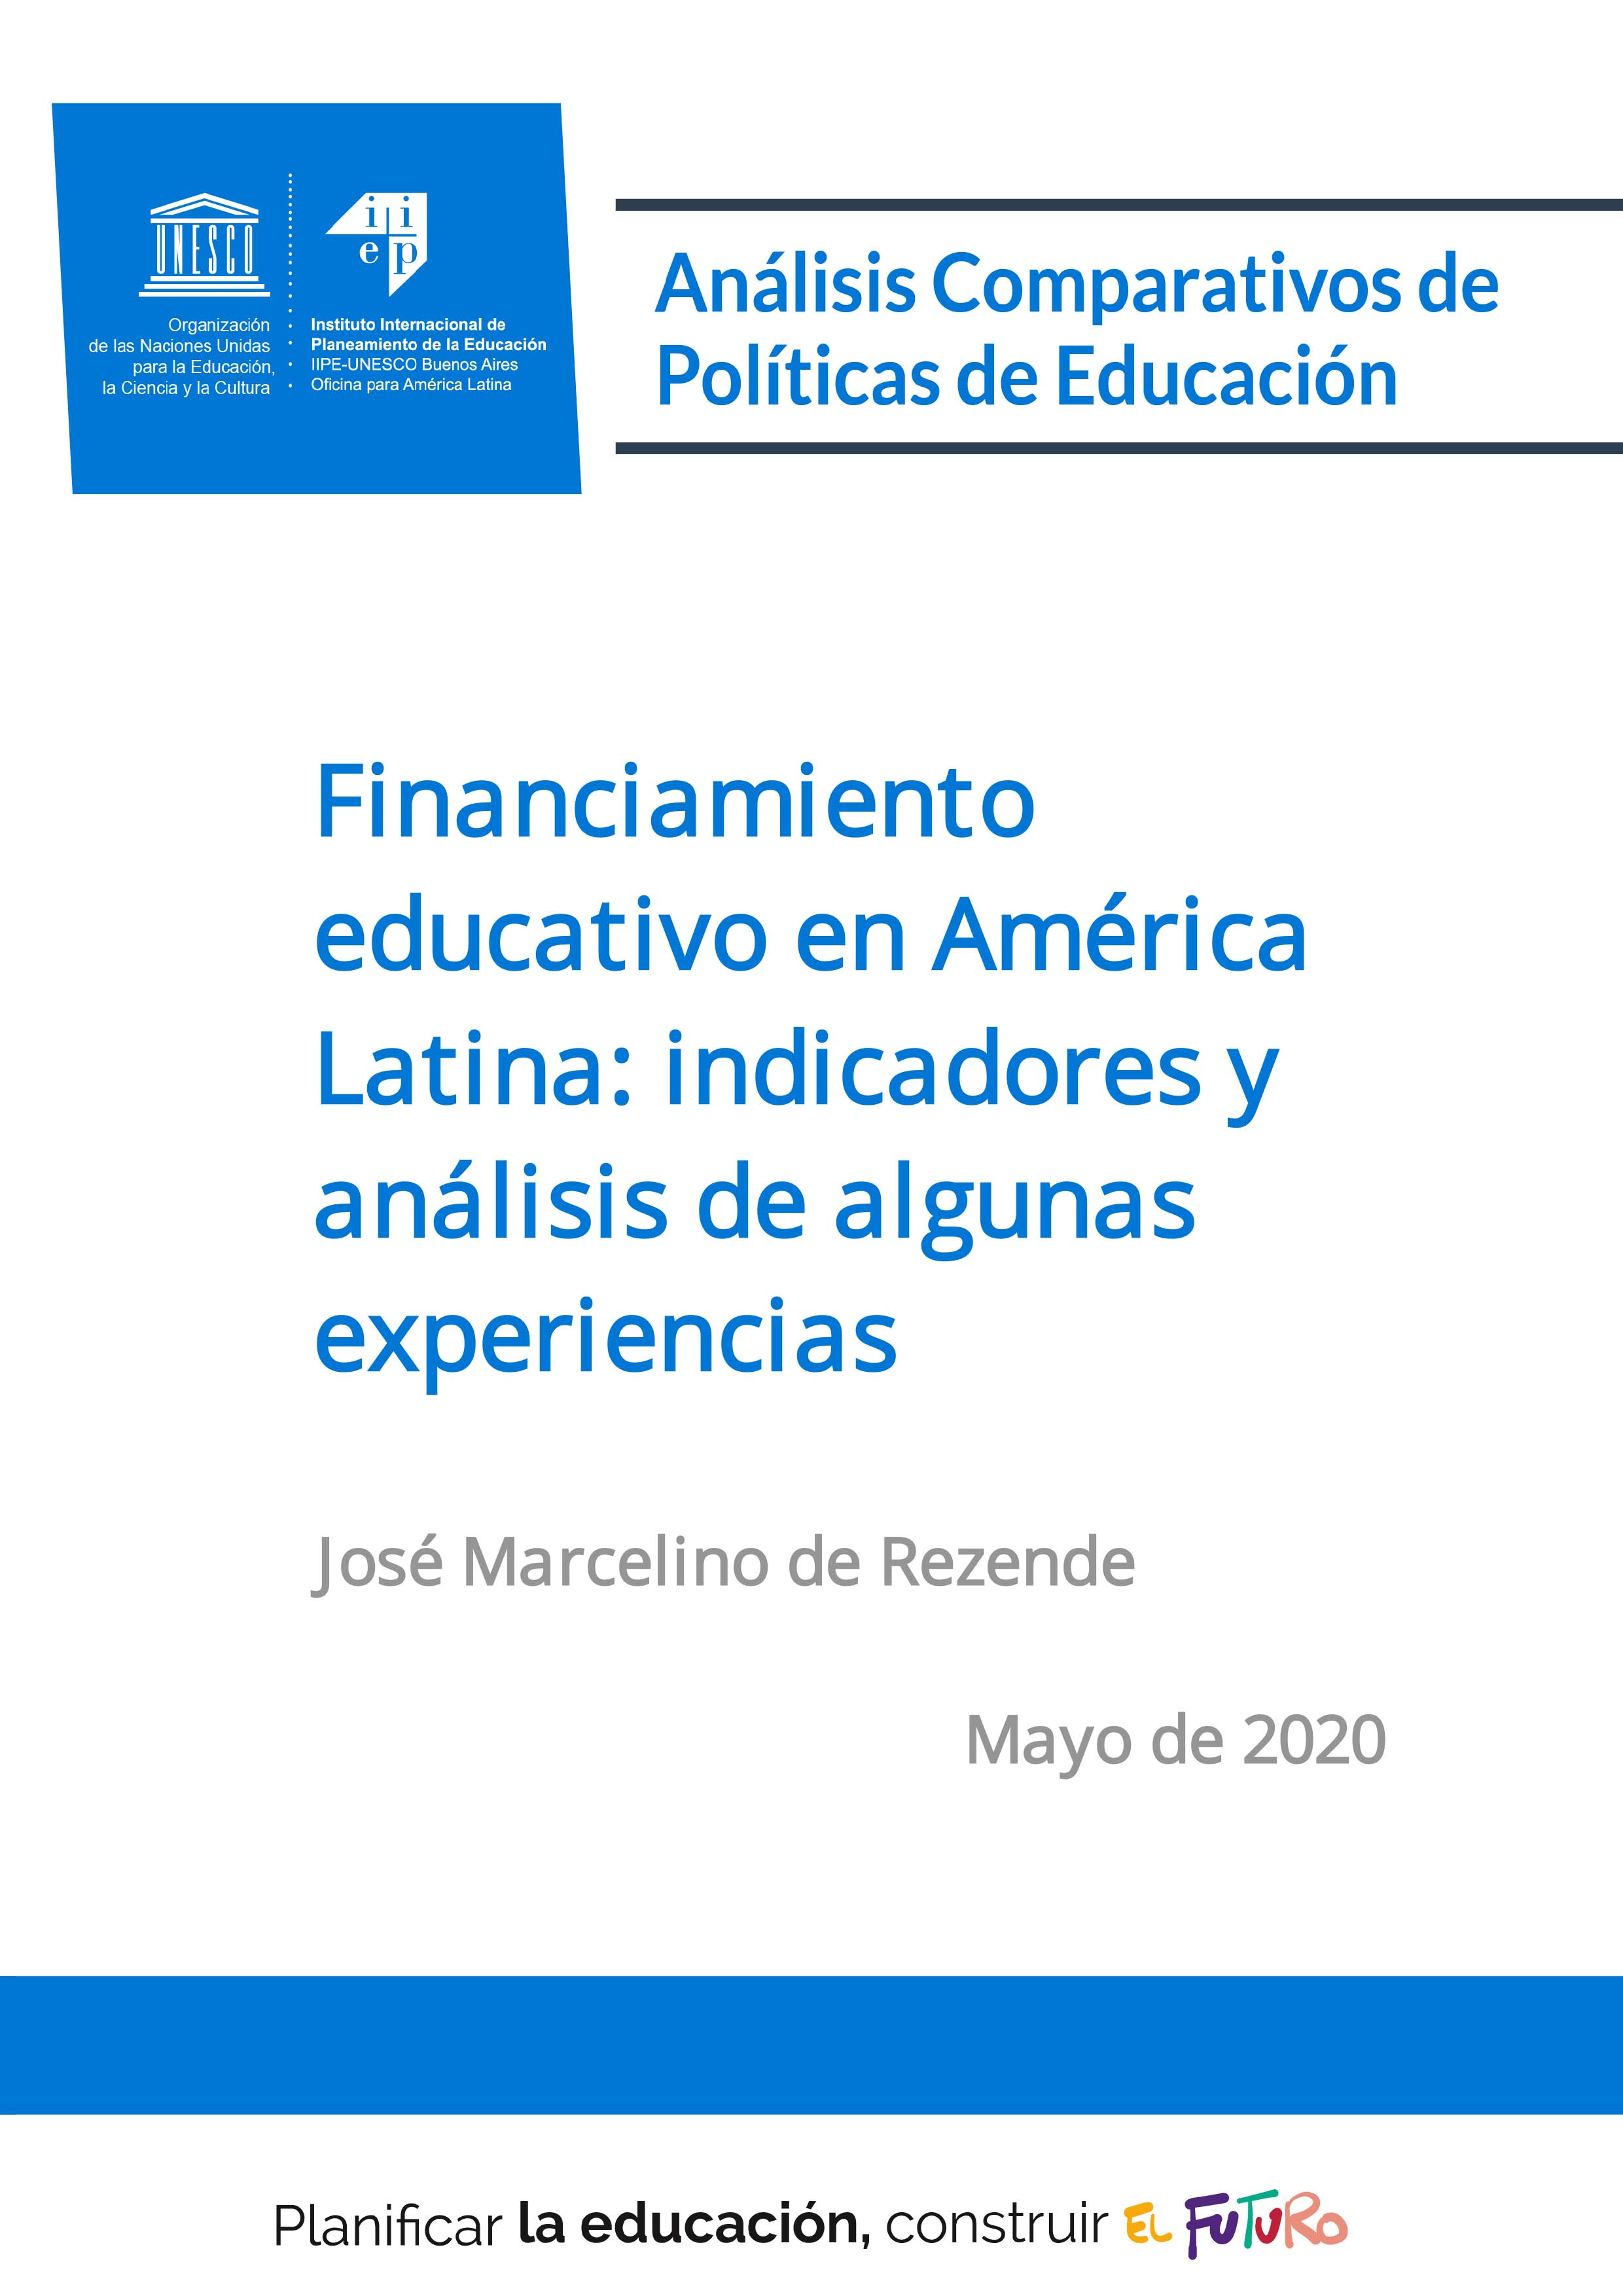 Financiamiento educativo en América Latina: indicadores y análisis de algunas experiencias